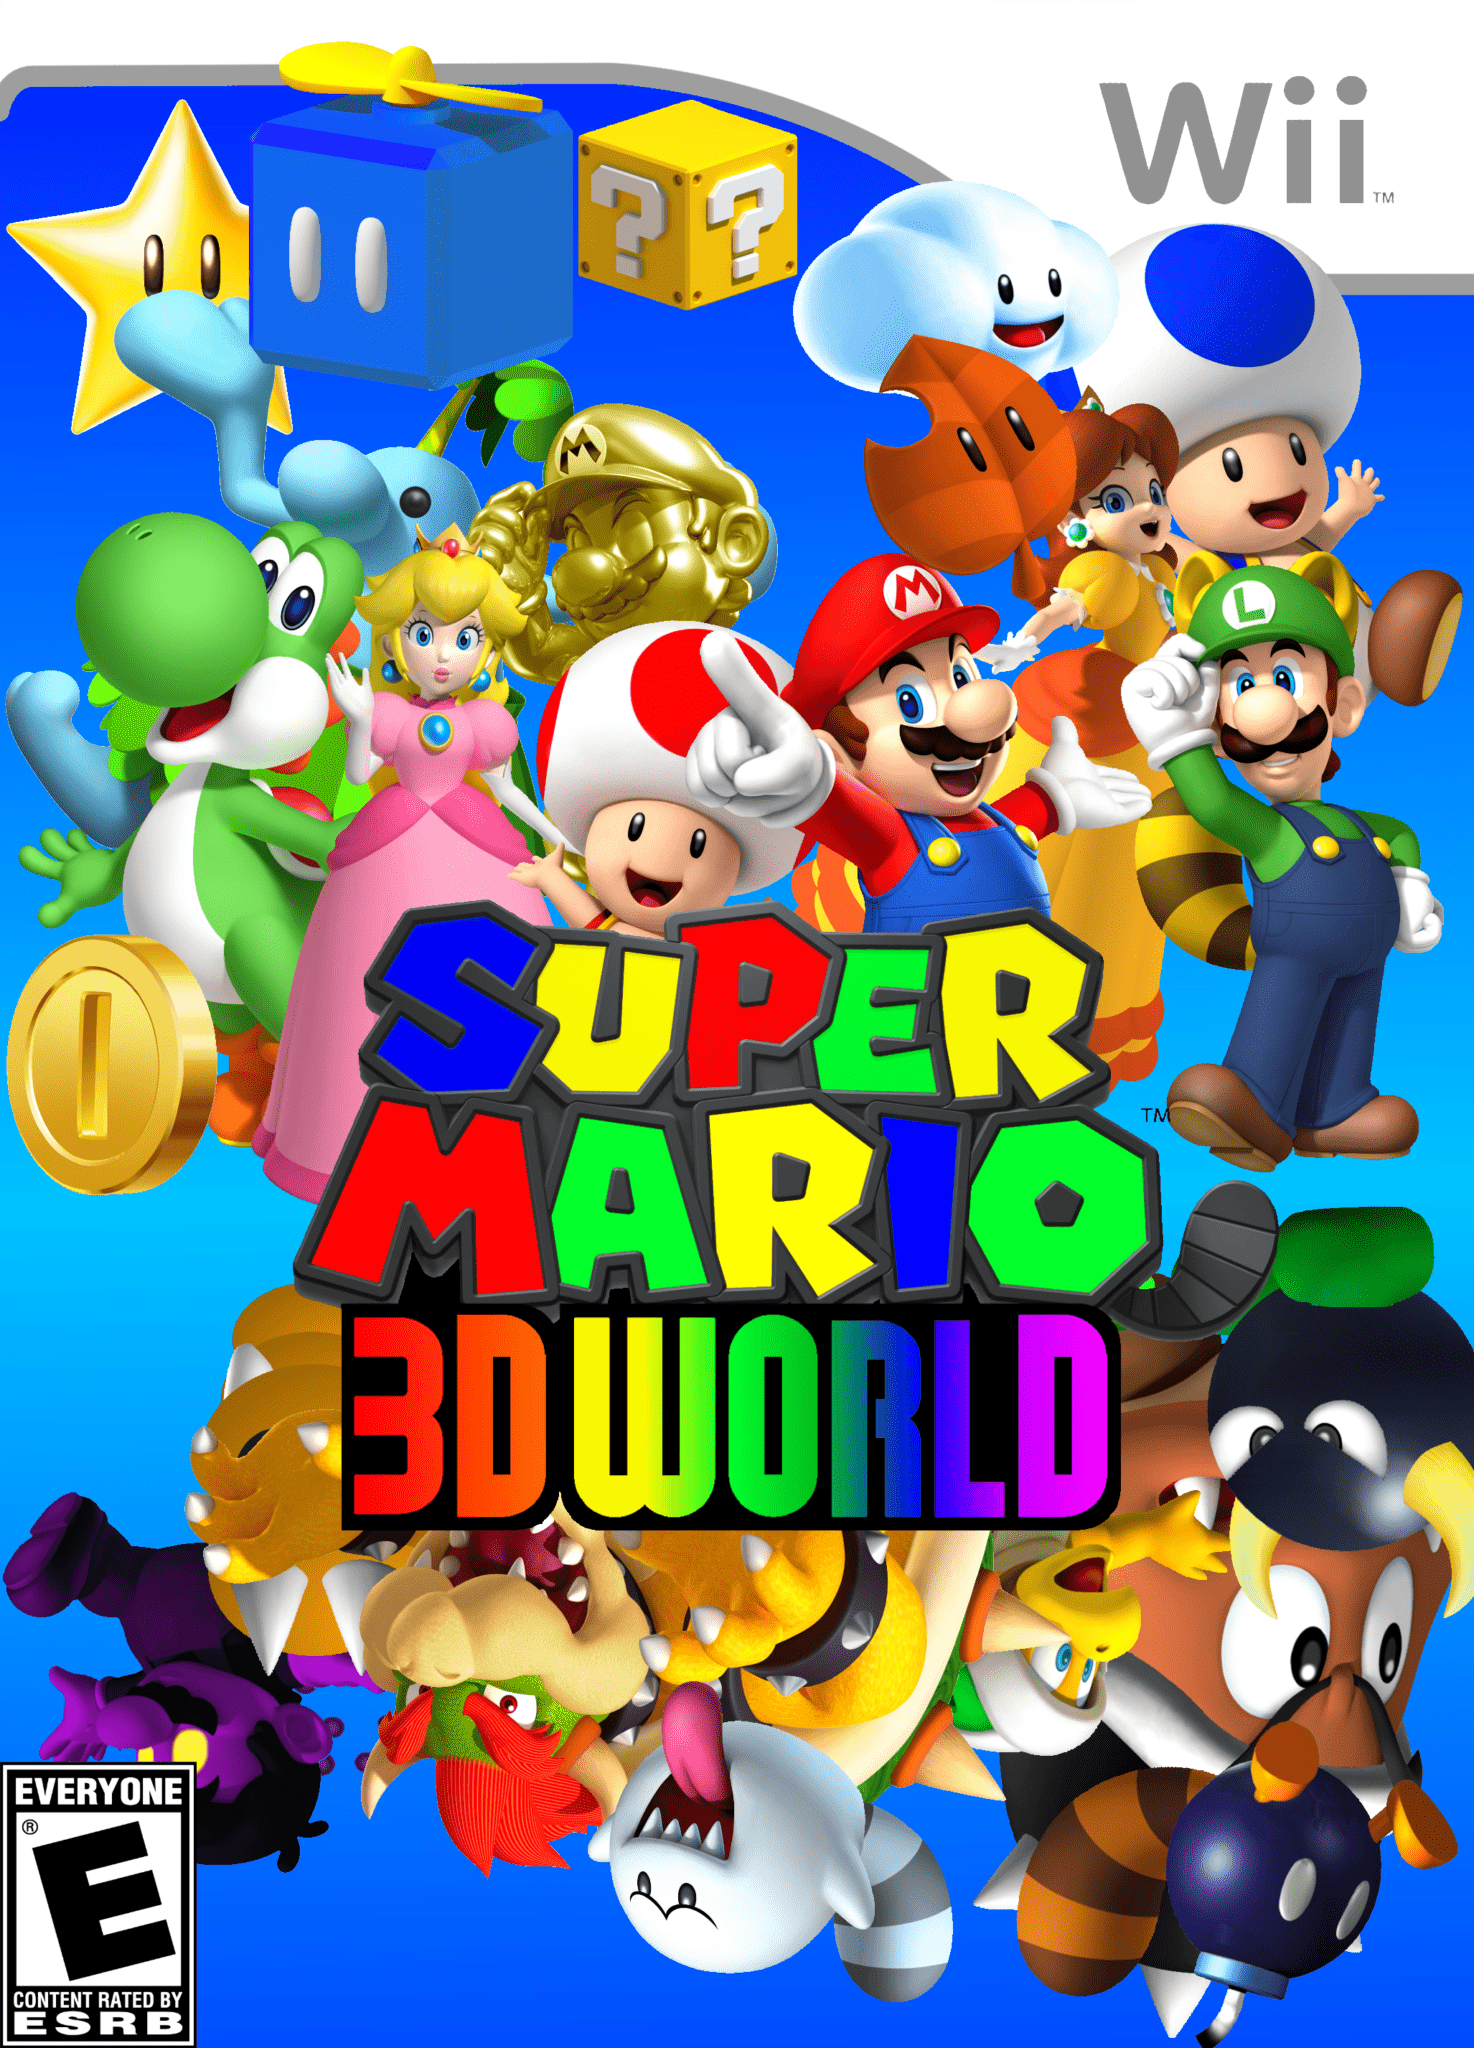 E3, E3 2013, nintendo, nintendo direct, Super Mario World 3D, wii u